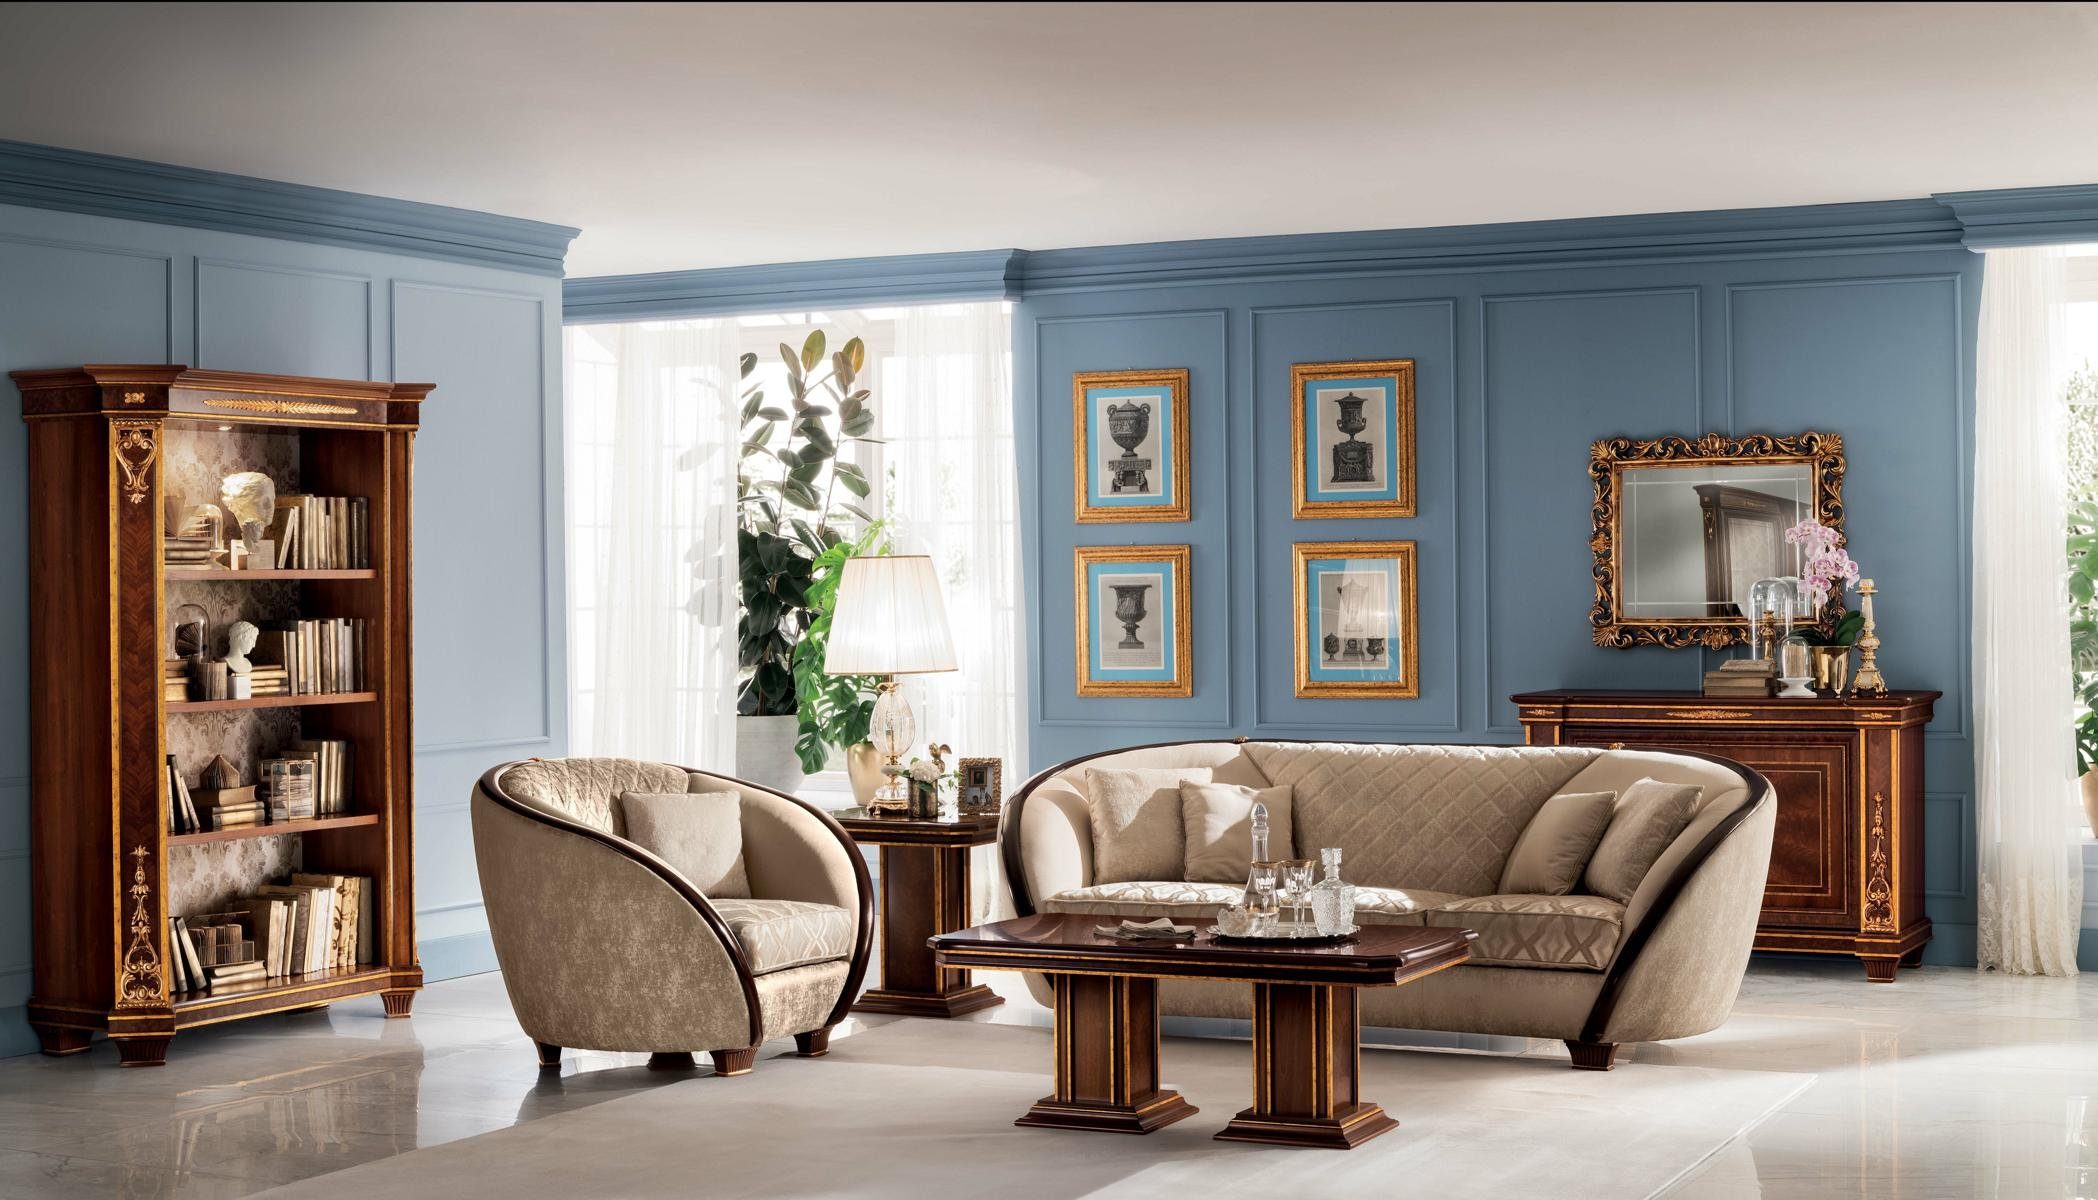 JVmoebel Wohnzimmer-Set, Luxus Klasse 2+1 Italienische Möbel Sofagarnitur Couch Sofa Neu arredoclassic™